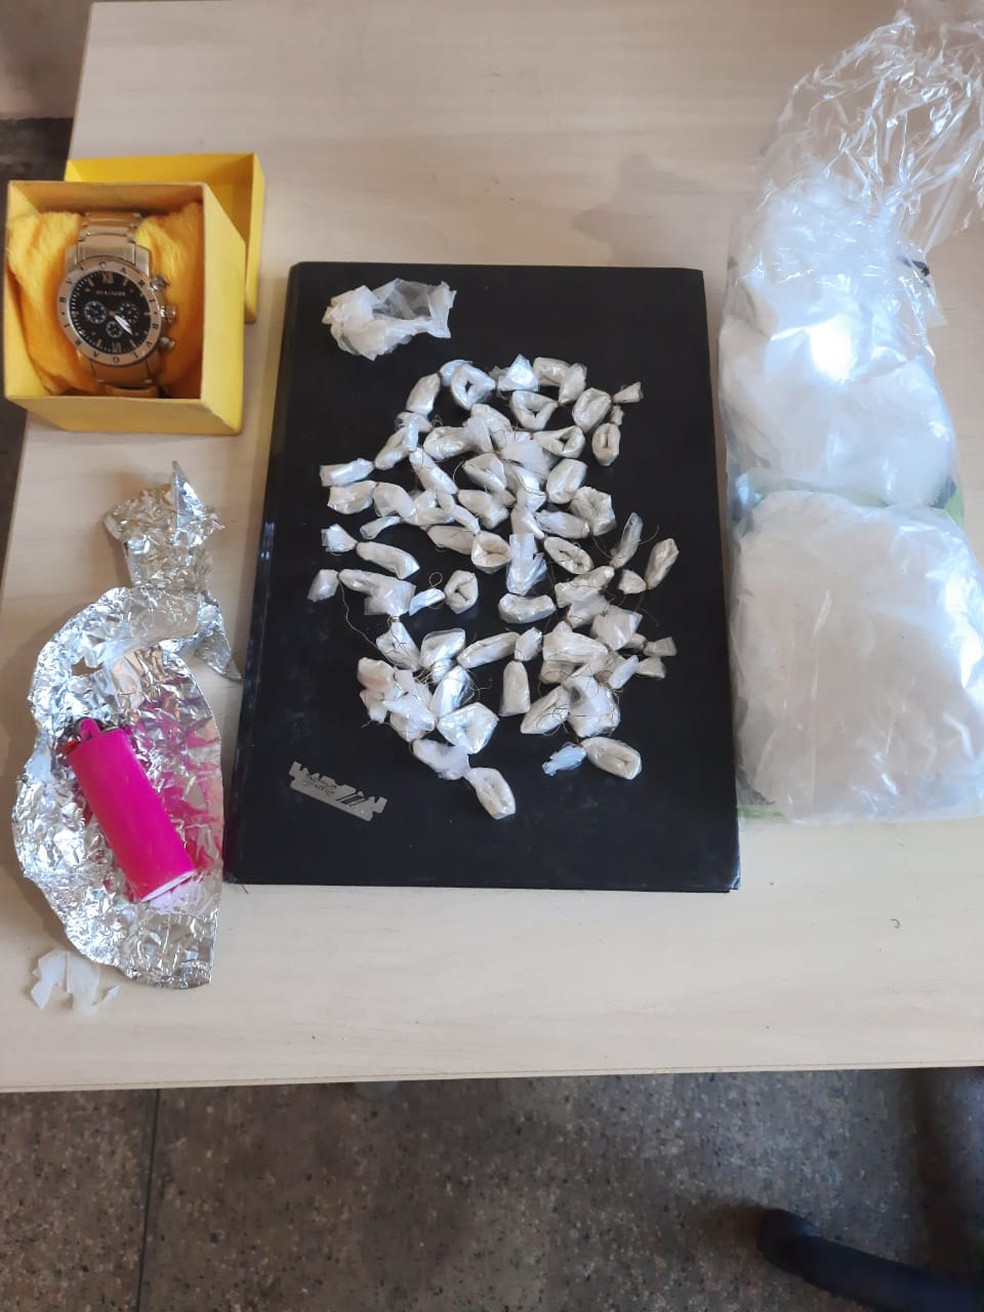 Papelotes de drogas e outros materiais apreendidos com suspeitos foram apresentados na delegacia — Foto: Polícia Militar/Divulgação